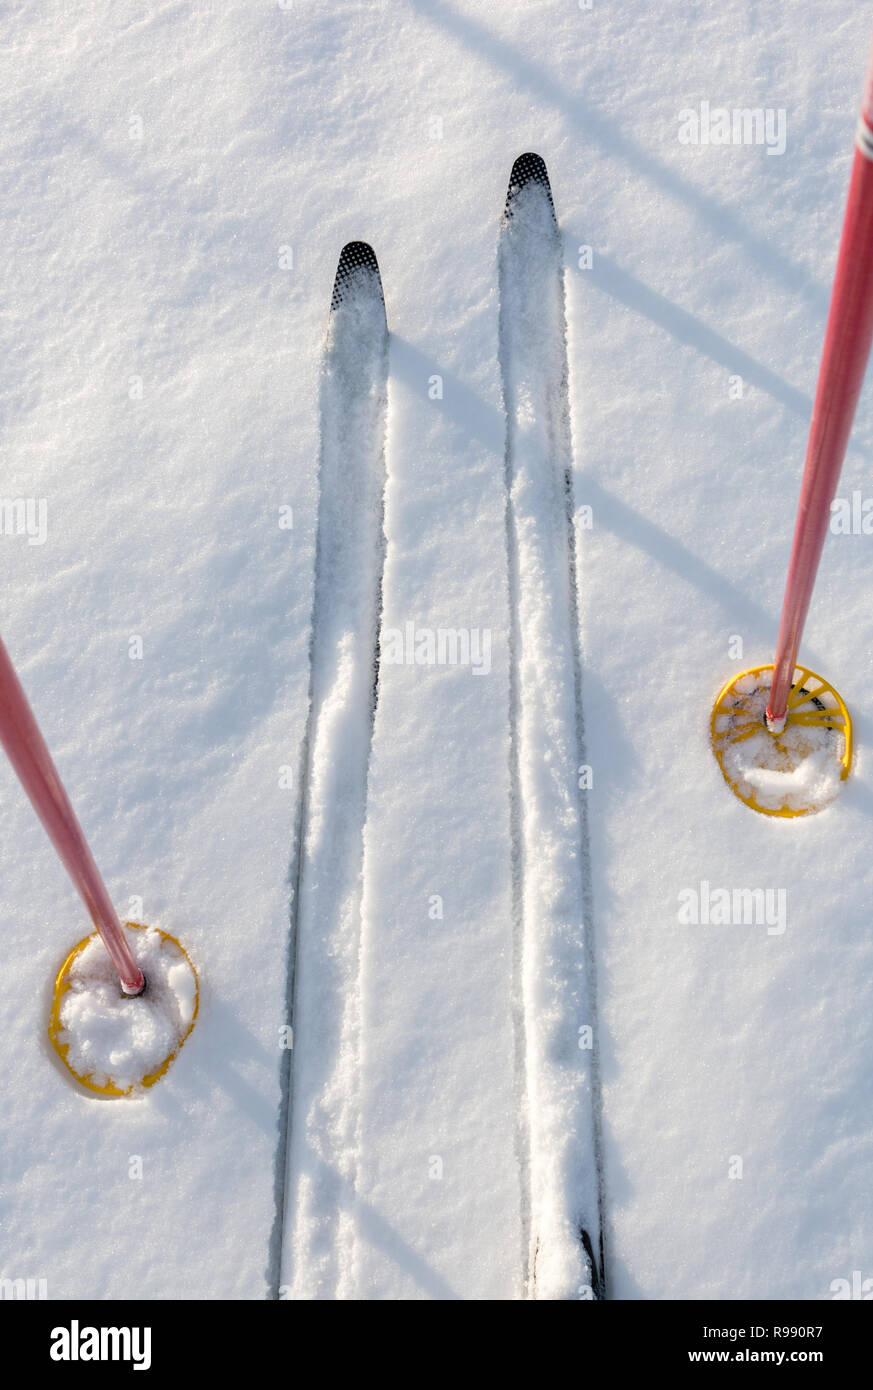 Fuori-Pista sci da fondo e bastoncini da sci su incontaminata bianco della neve. Foto Stock